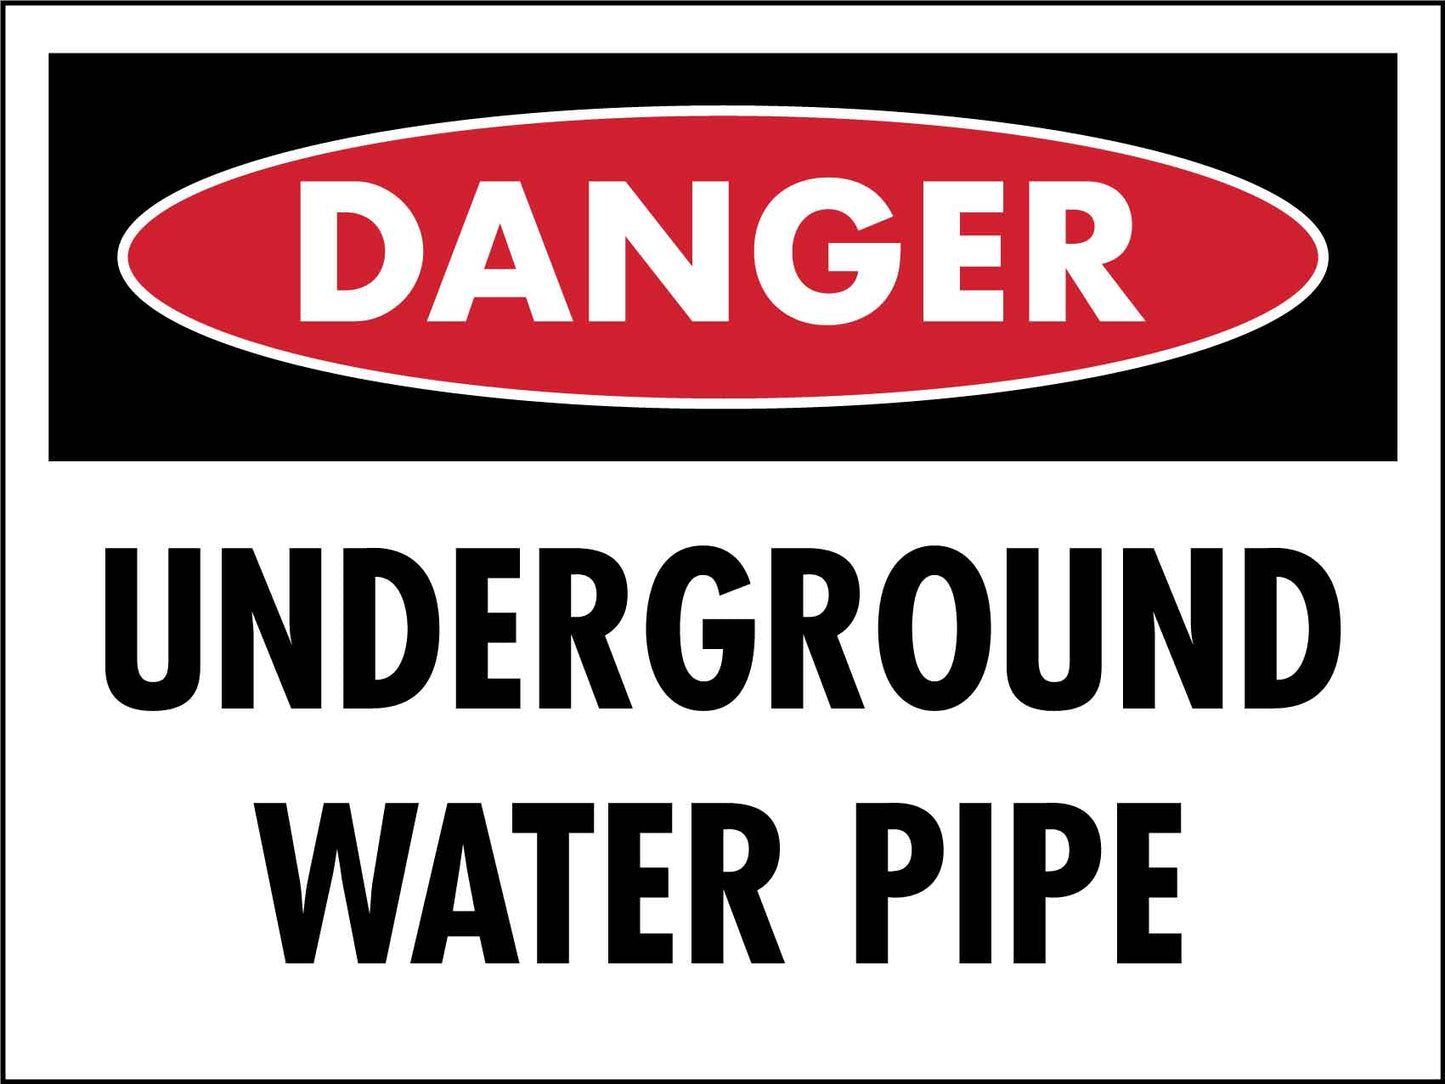 Danger Underground Water Pipe Sign